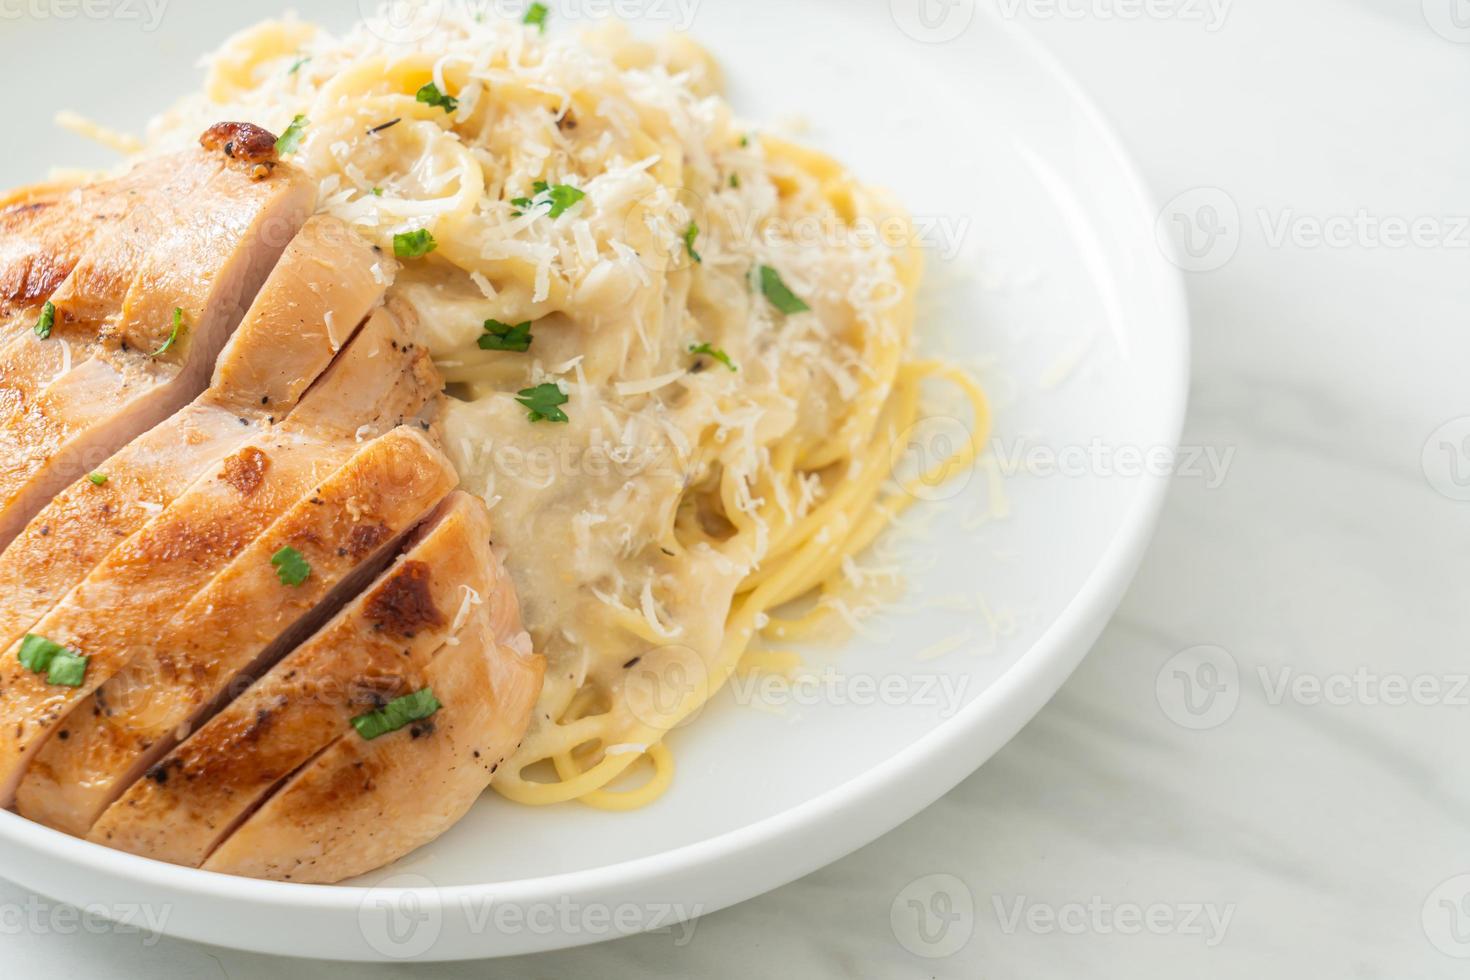 espaguete caseiro com molho cremoso branco com frango grelhado foto